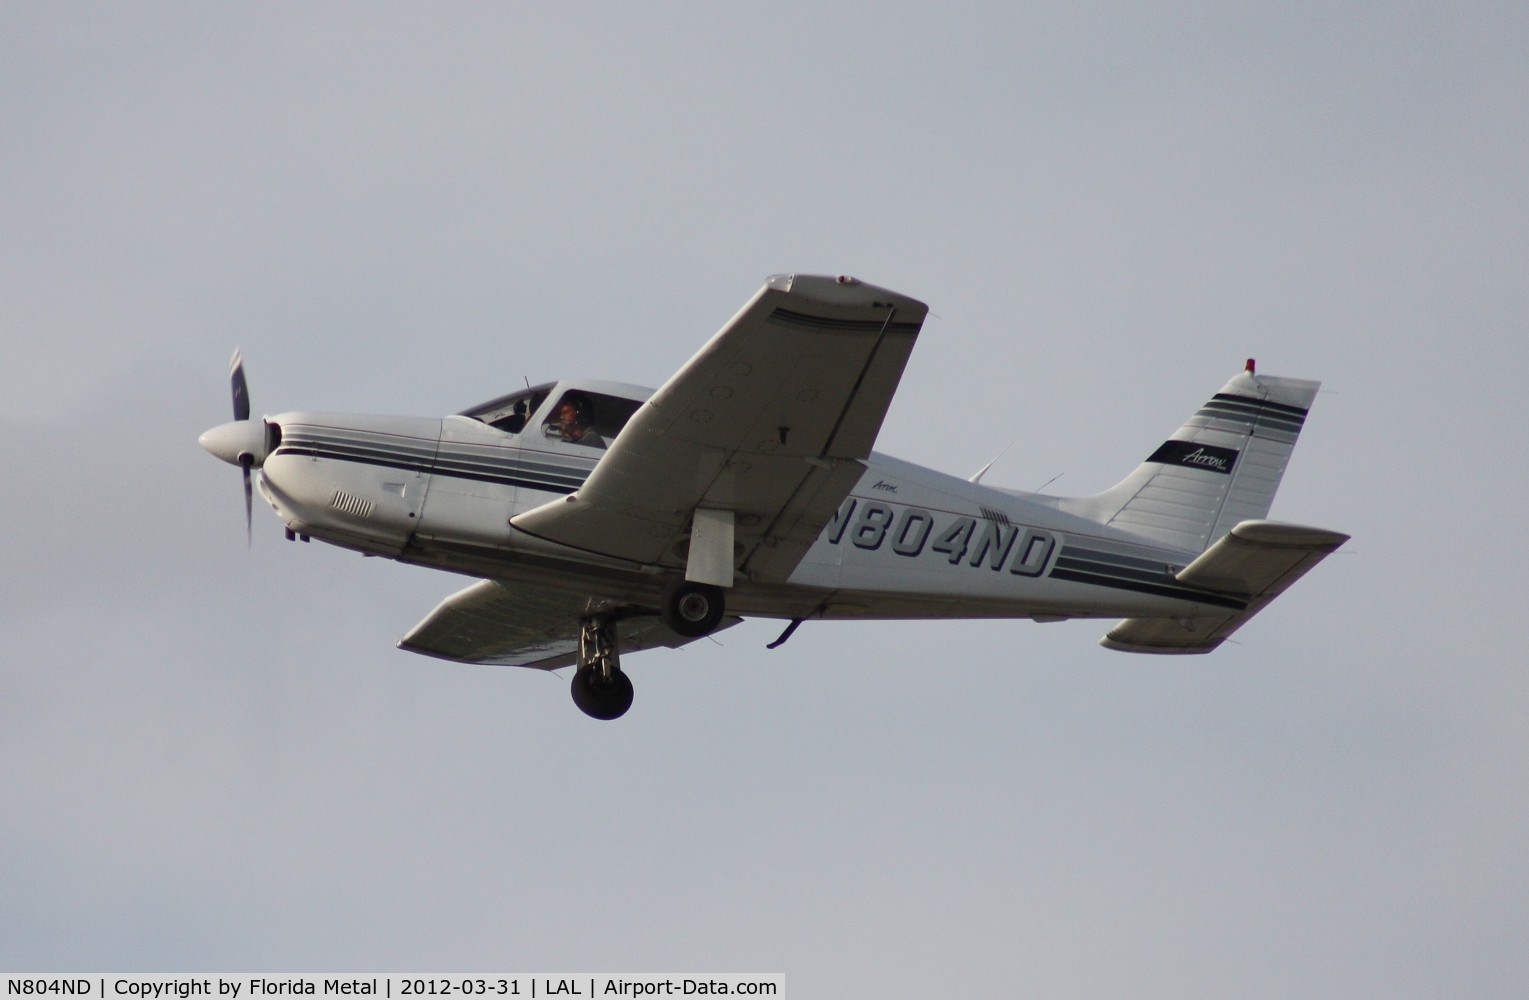 N804ND, 1988 Piper PA-28R-201 Cherokee Arrow III C/N 2837004, PA-28R-201